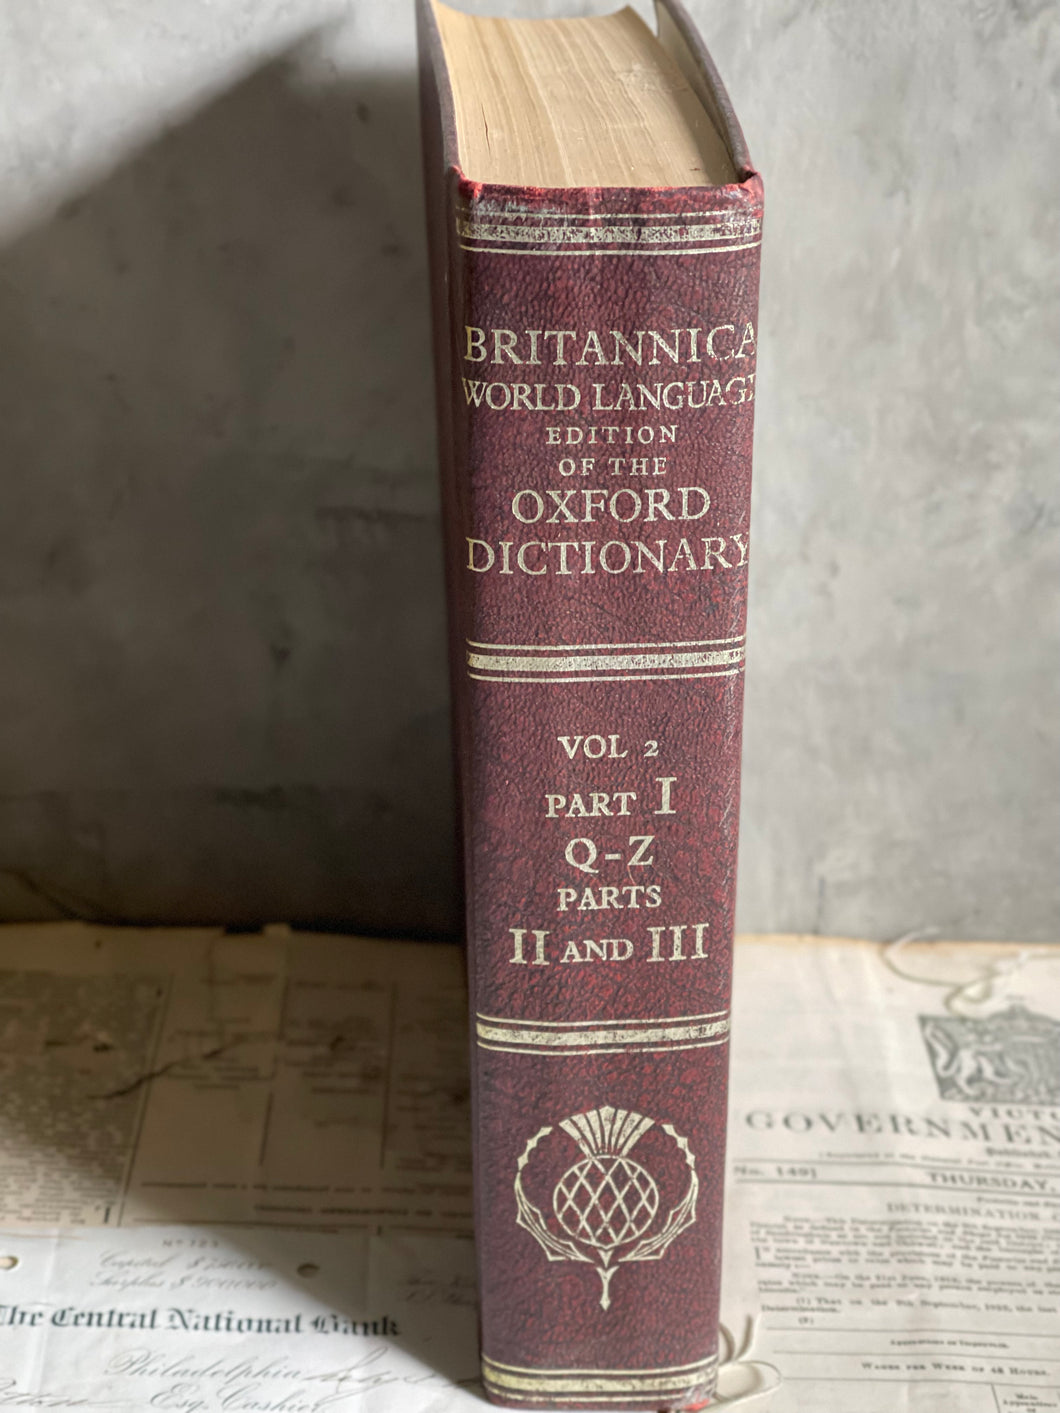 Vintage Britannica Oxford Dictionary Parts 1 & 2